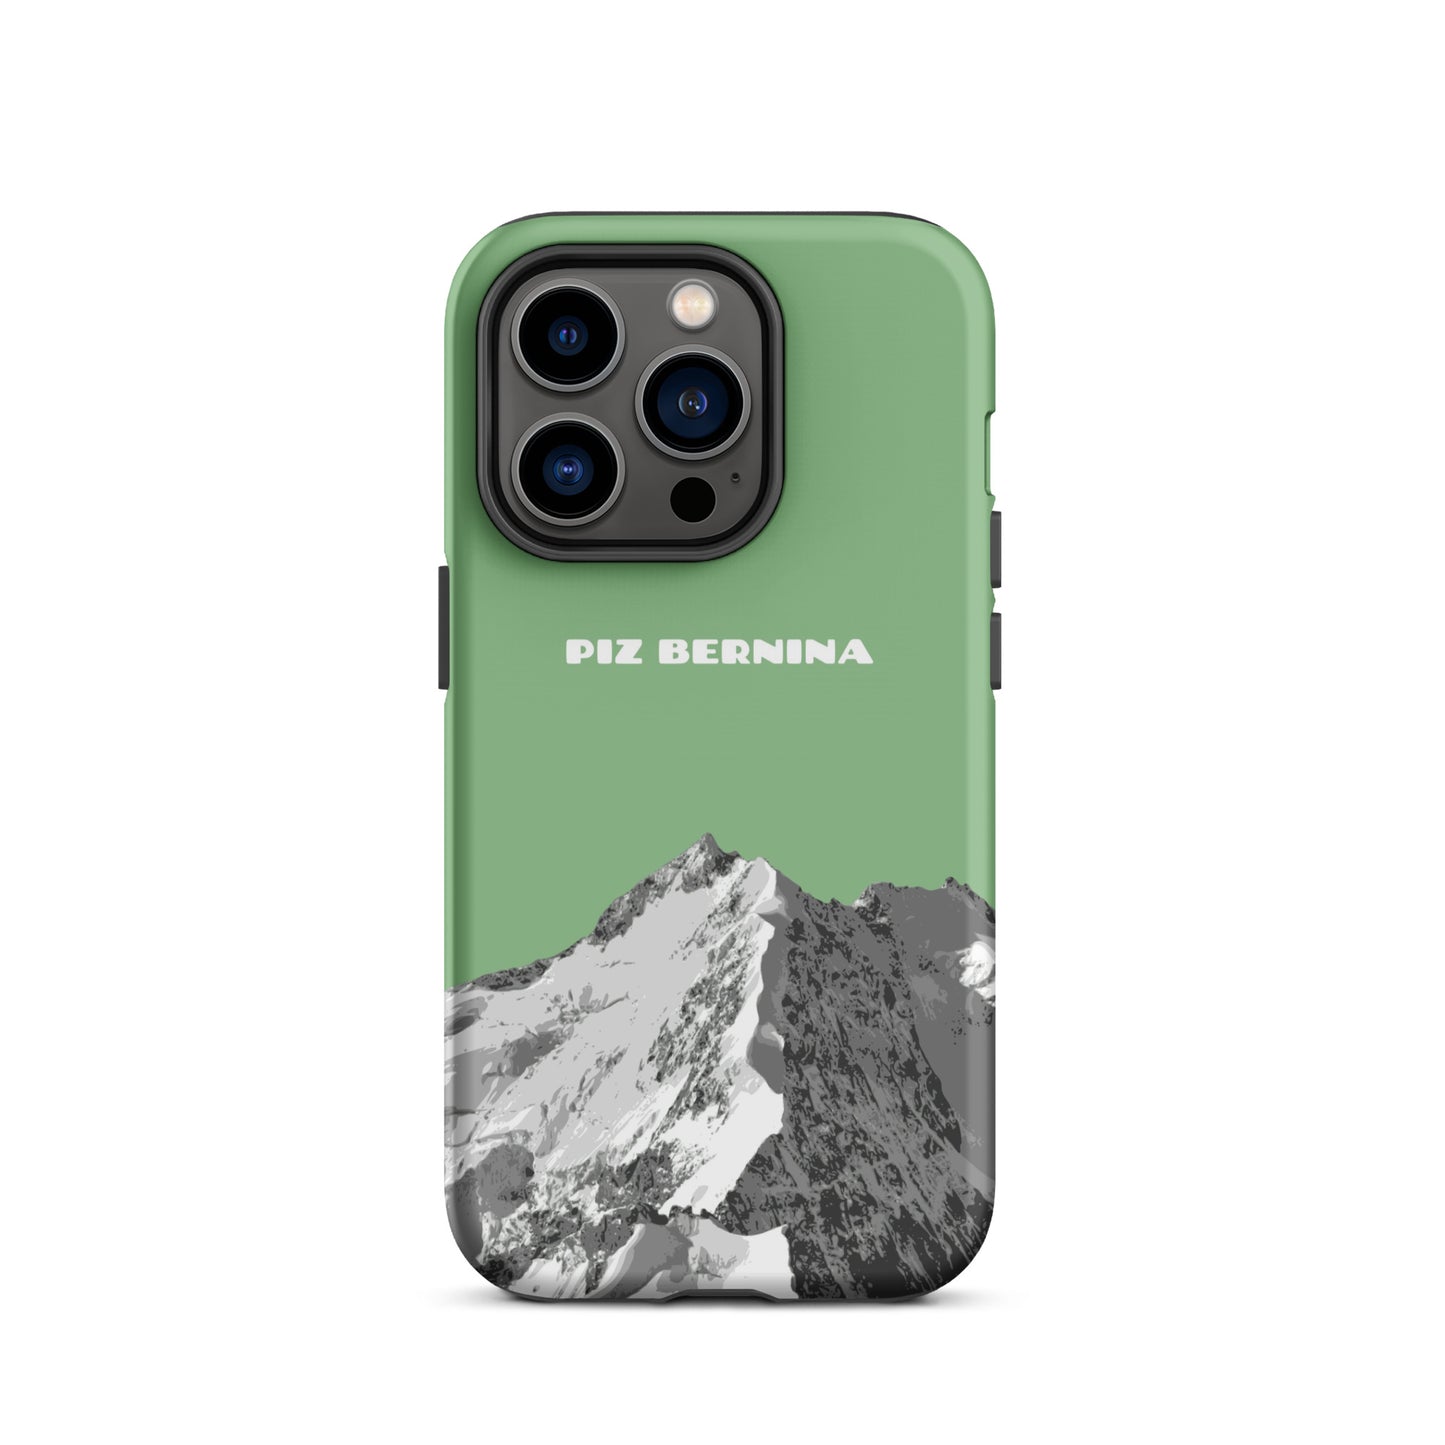 Hülle für das iPhone 14 Pro von Apple in der Farbe Hellgrün, dass den Piz Bernina in Graubünden zeigt.